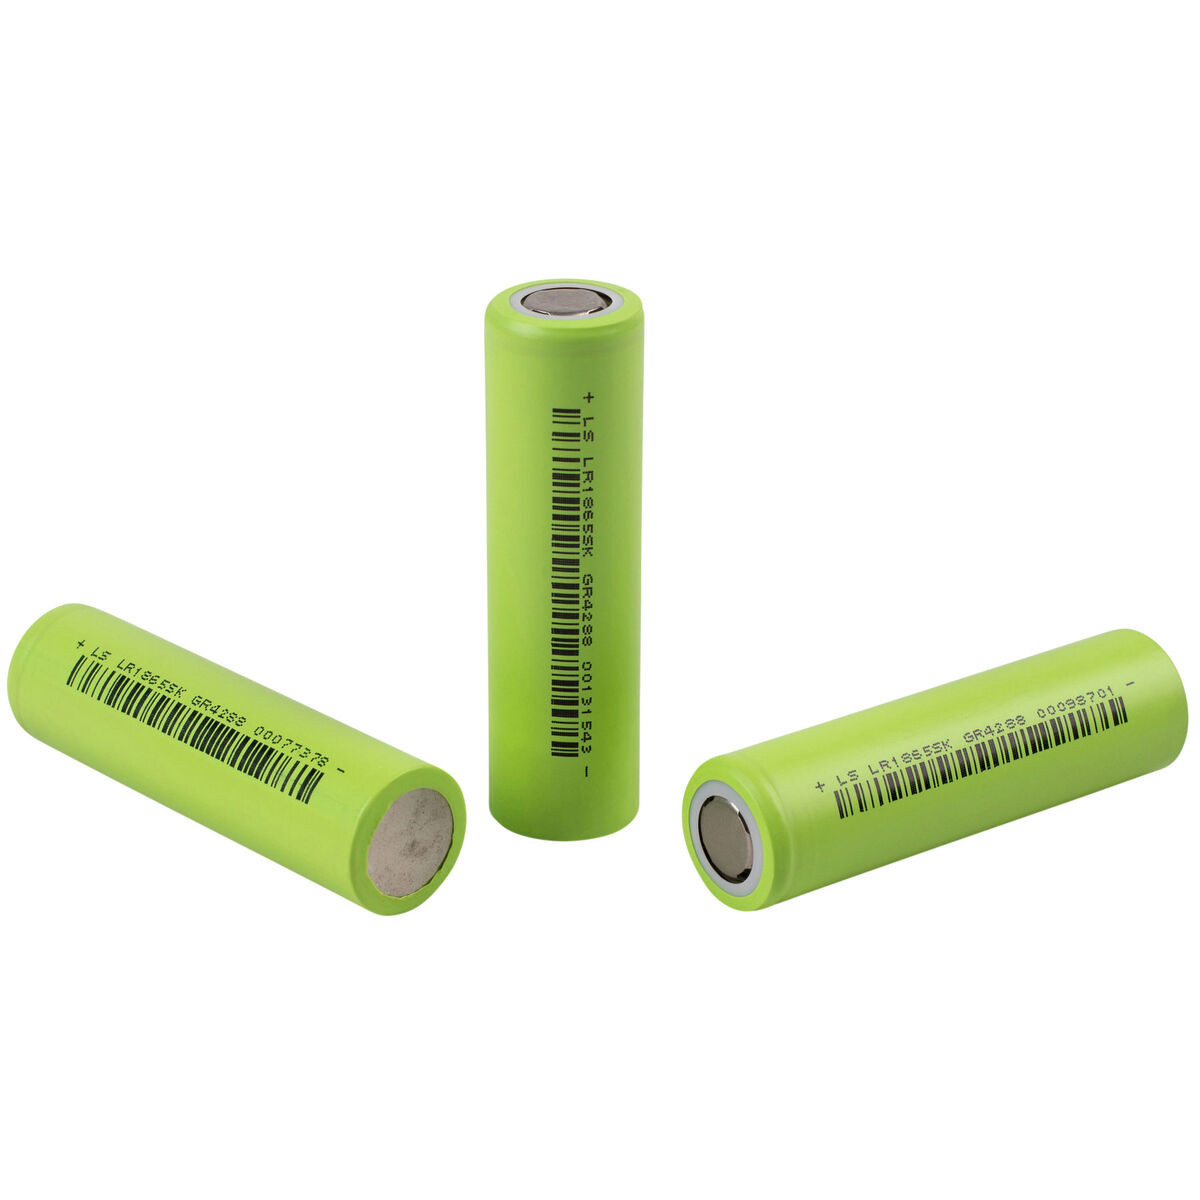 Lishen 18650 2600mAh Li-Ion Flat Top Battery 3-Pack